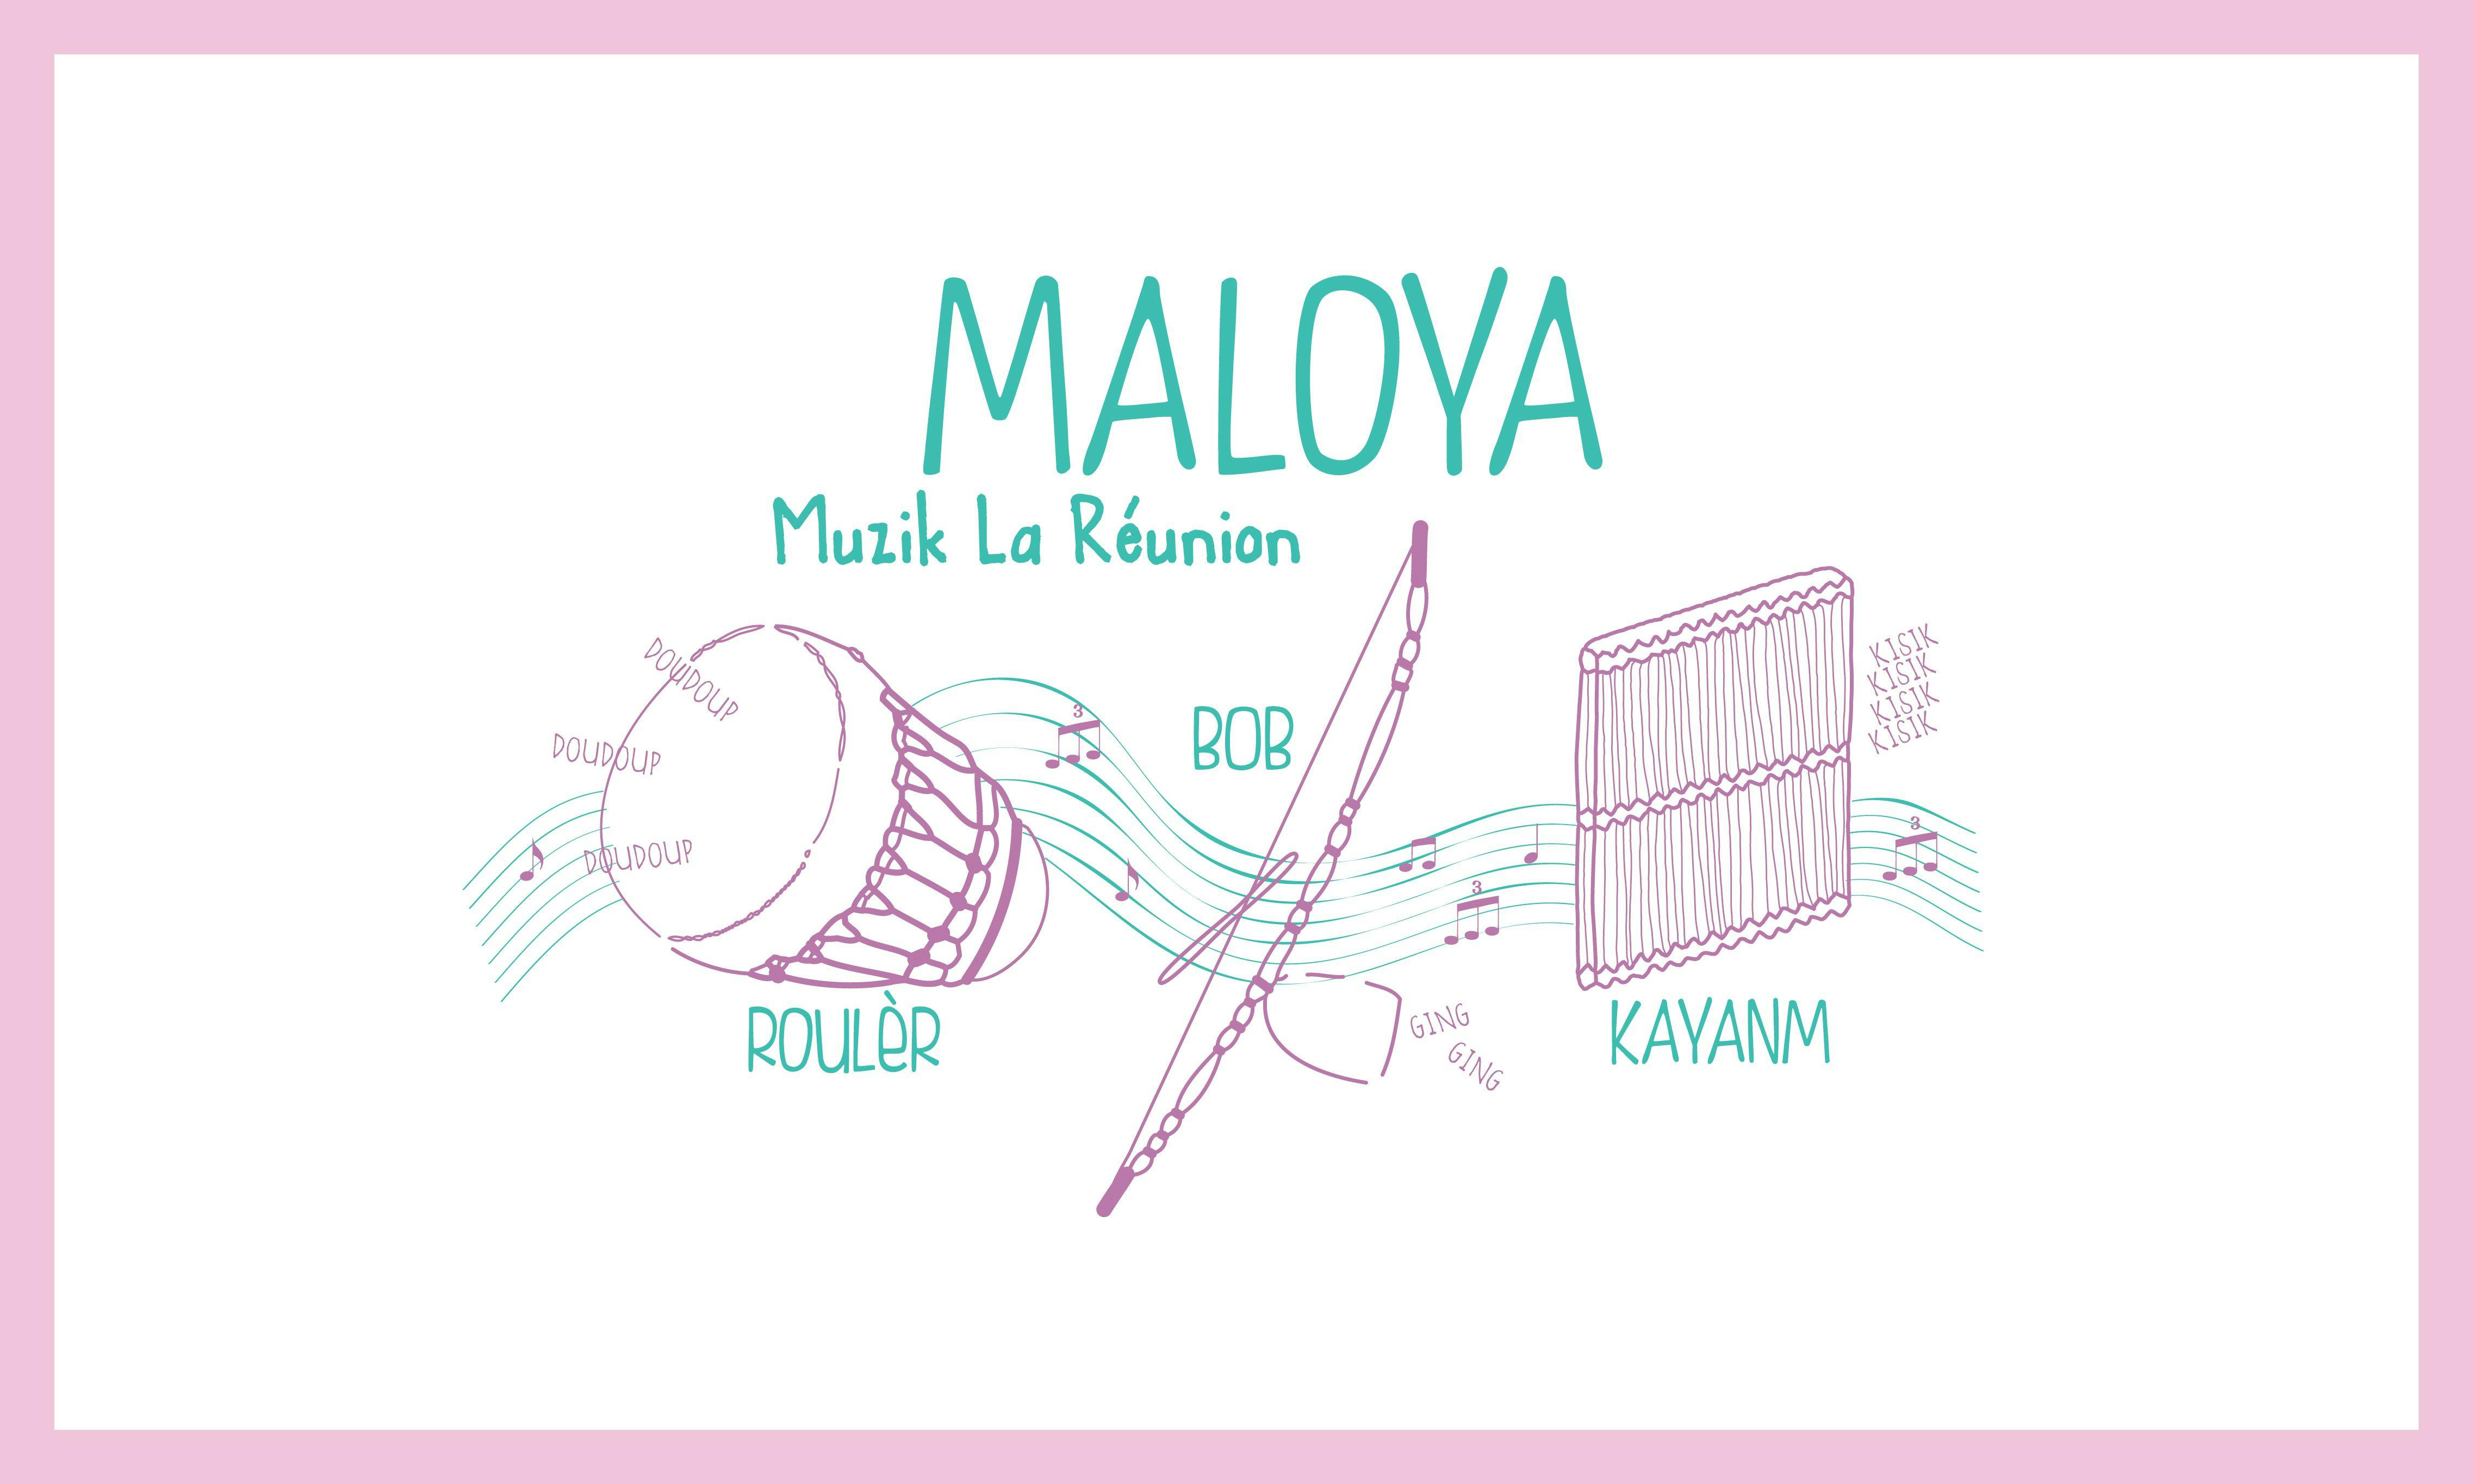 Illustration of Maloya instruments